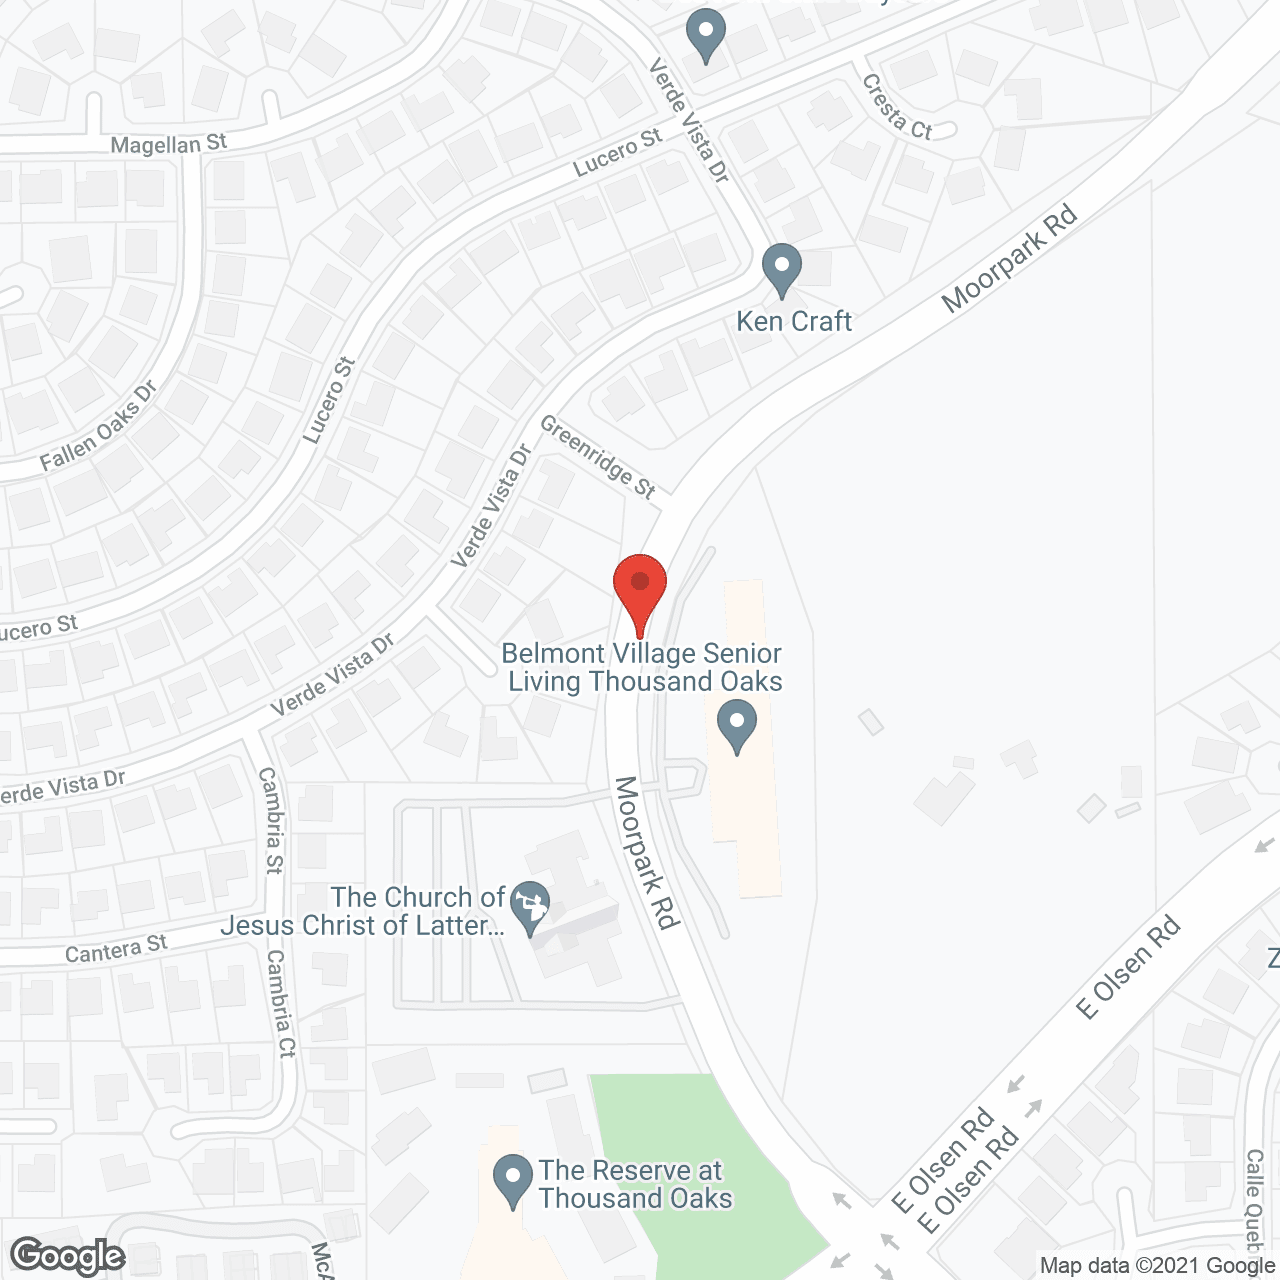 Belmont Village Thousand Oaks in google map